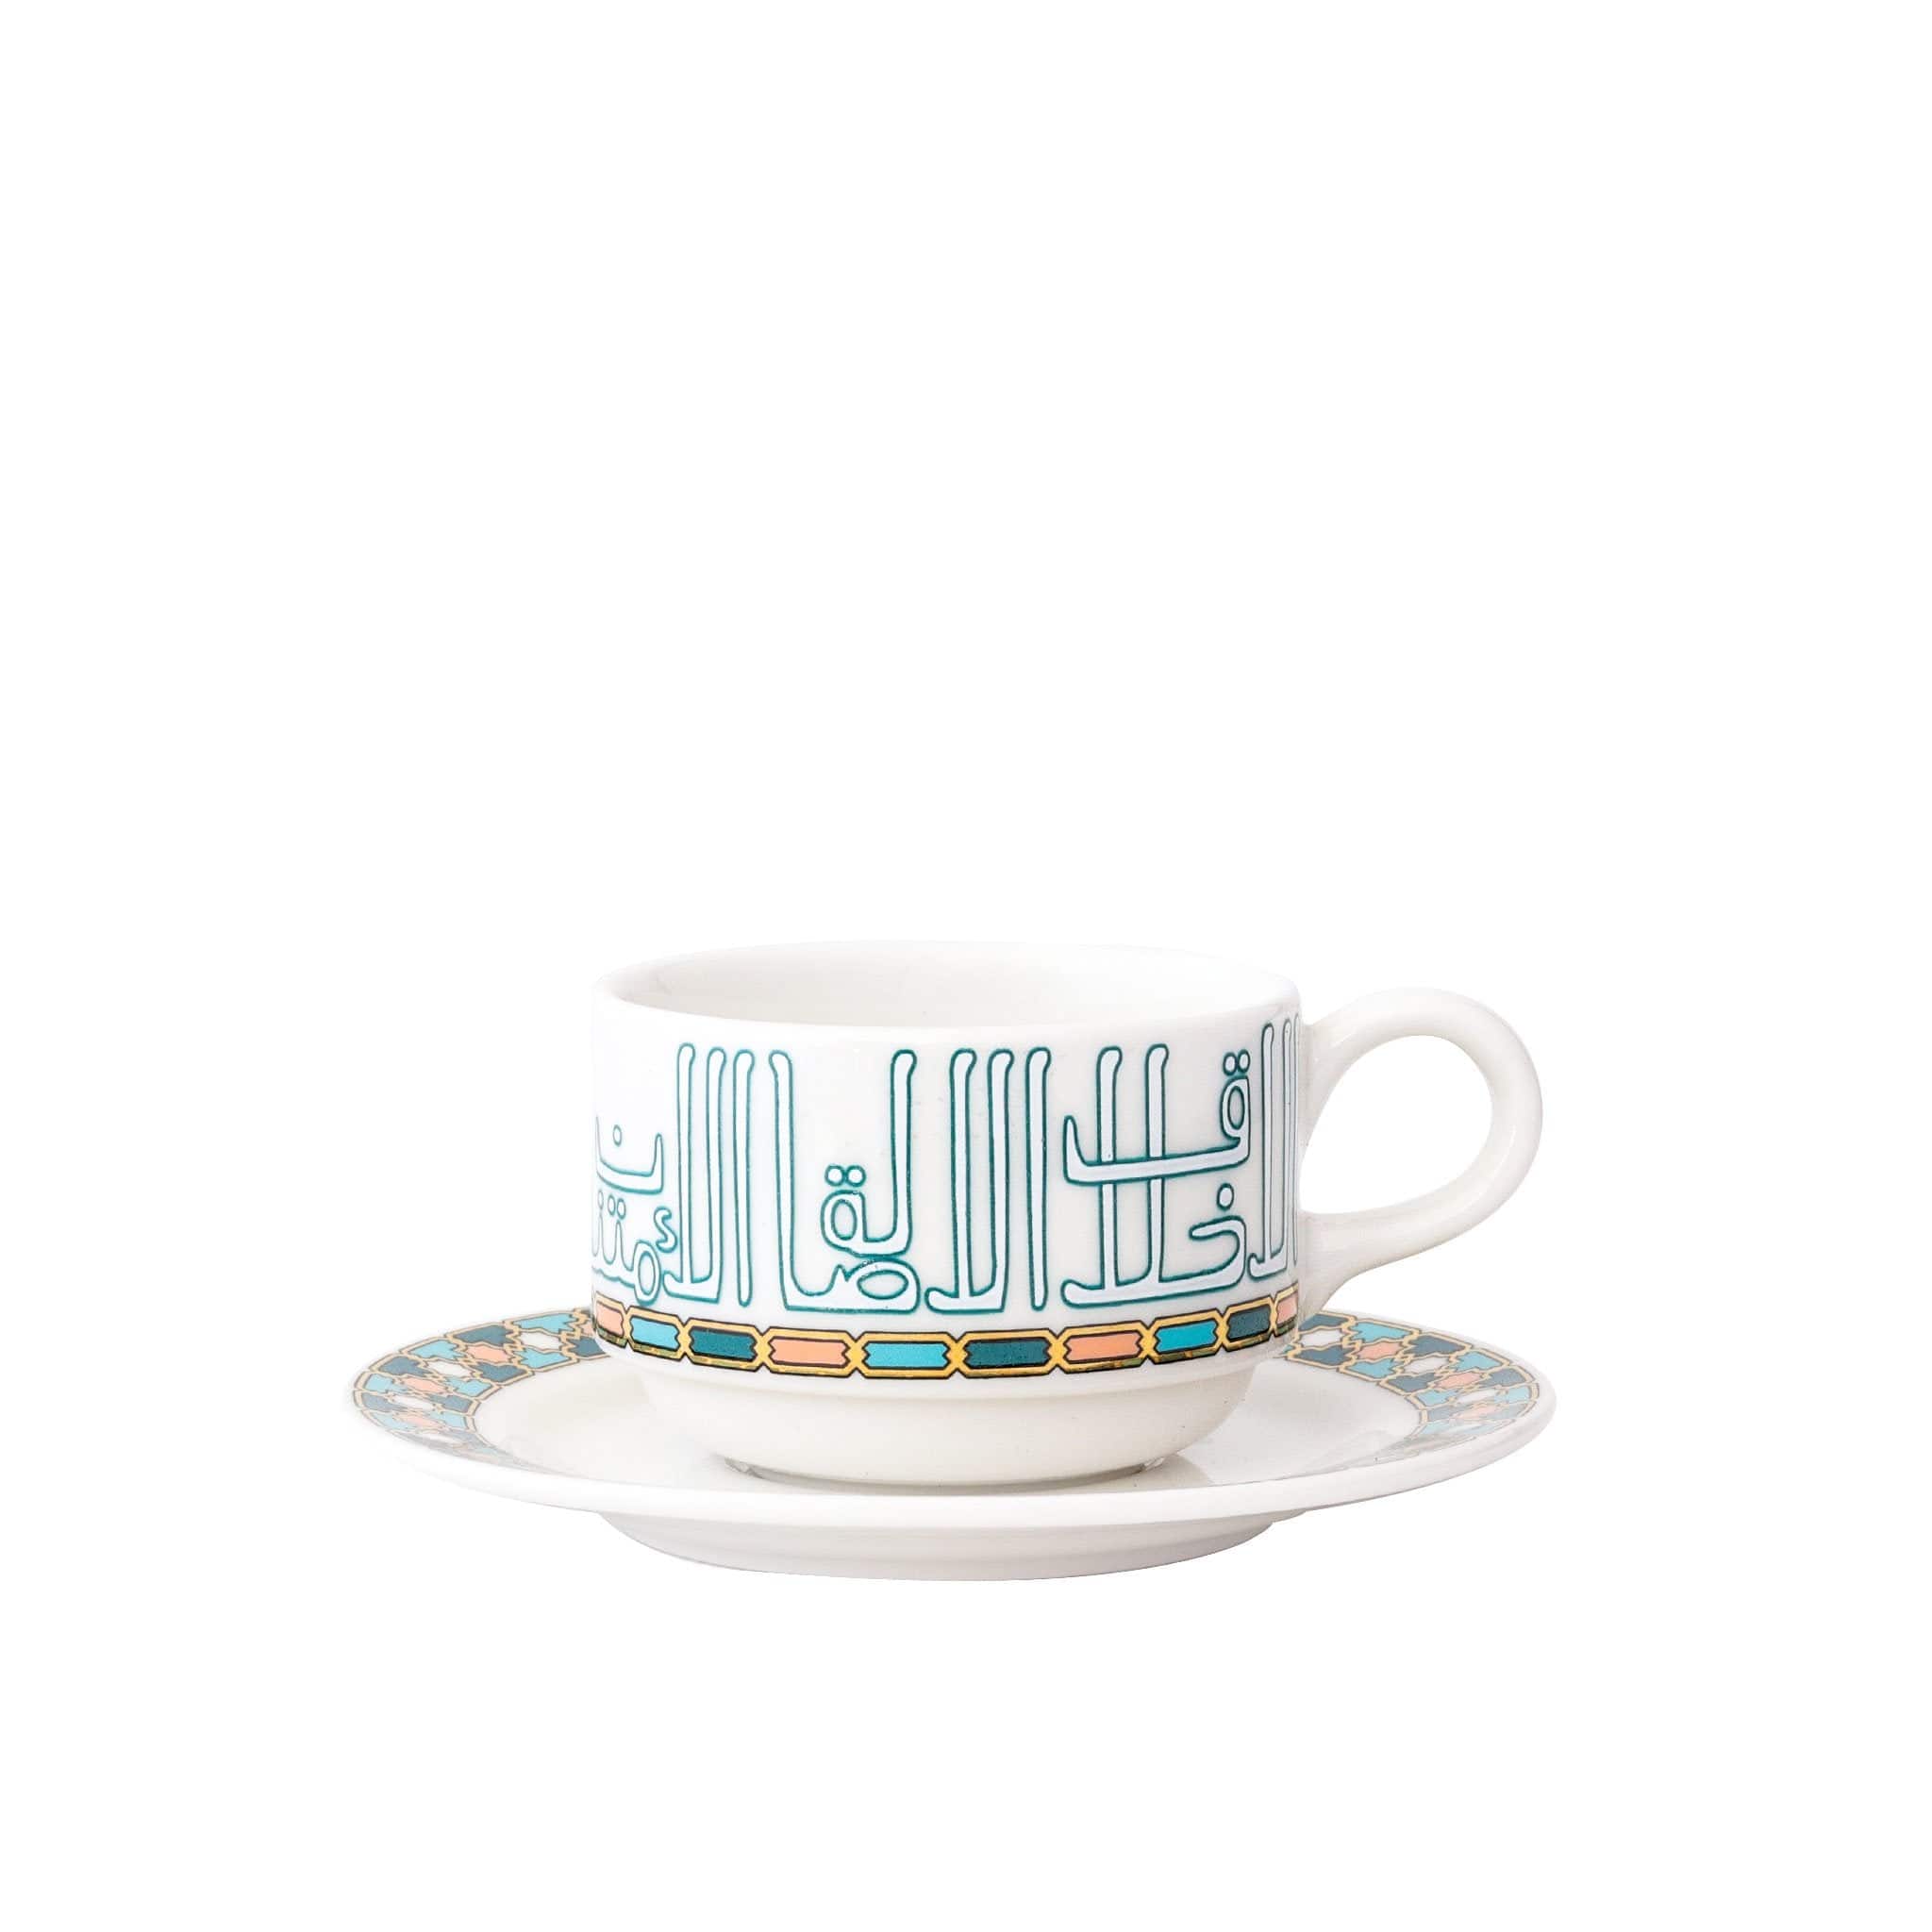 Dimlaj Asala Set of 6 Pcs Tea Cups and Saucers (Gold & Green)